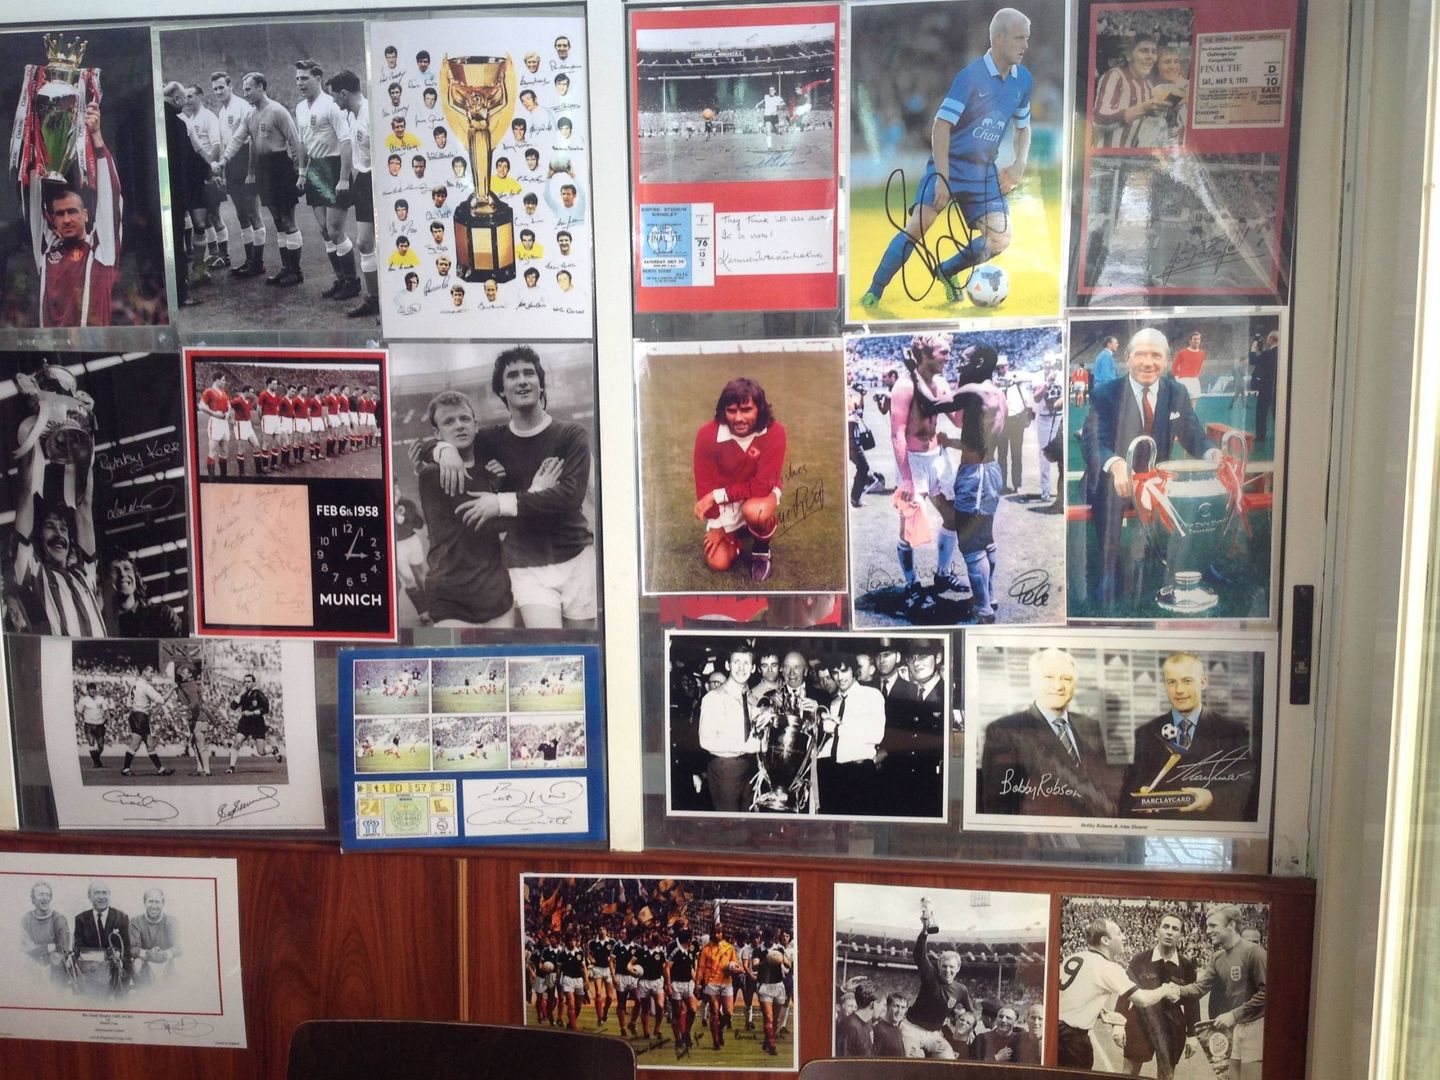 Pantallas gigantes, pizarras con los horarios de los partidos y pósteres con firmas de ídolos como Bobby Robson. El fútbol es una atracción más. Se ve en las terrazas con pintas de cerveza a 1,50 €. (Foto: V. Romero)